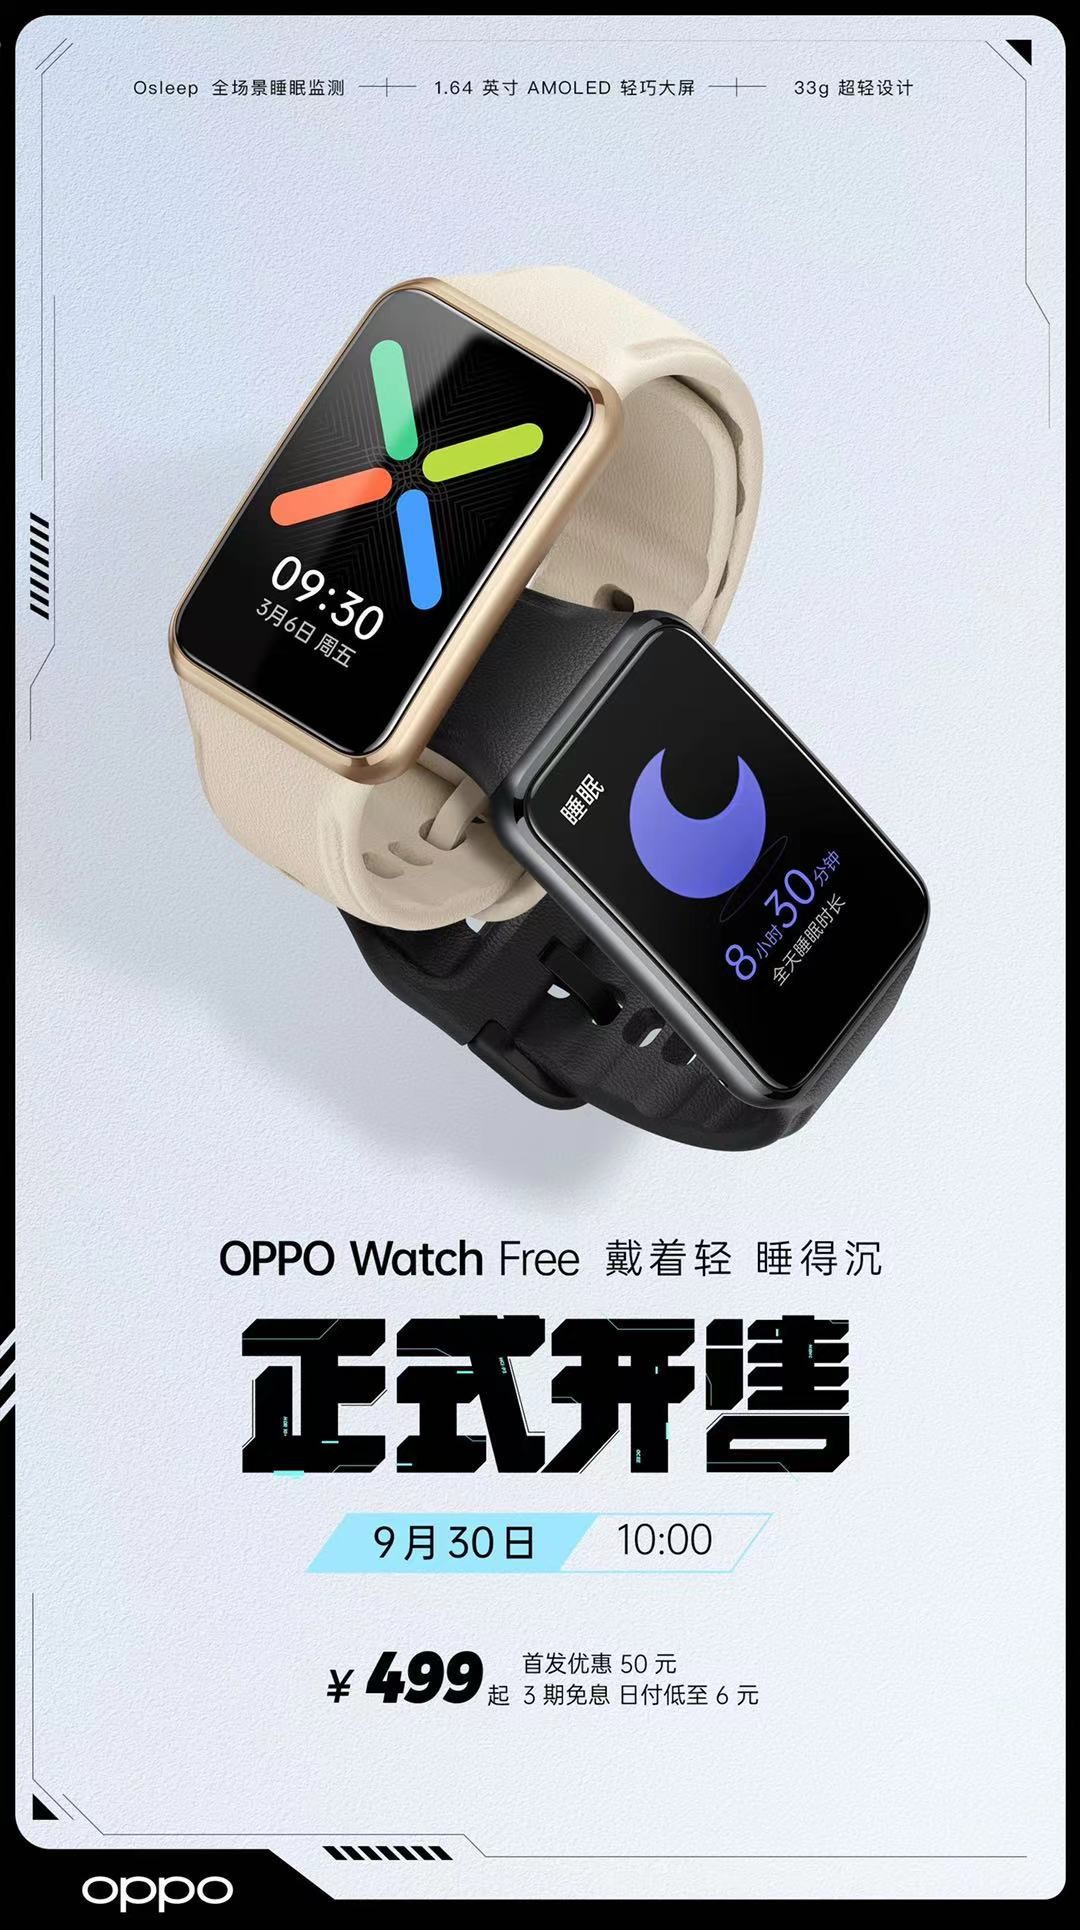 “超能睡手表”OPPO Watch Free今日开售，助力健康睡眠，首销到手价499元起